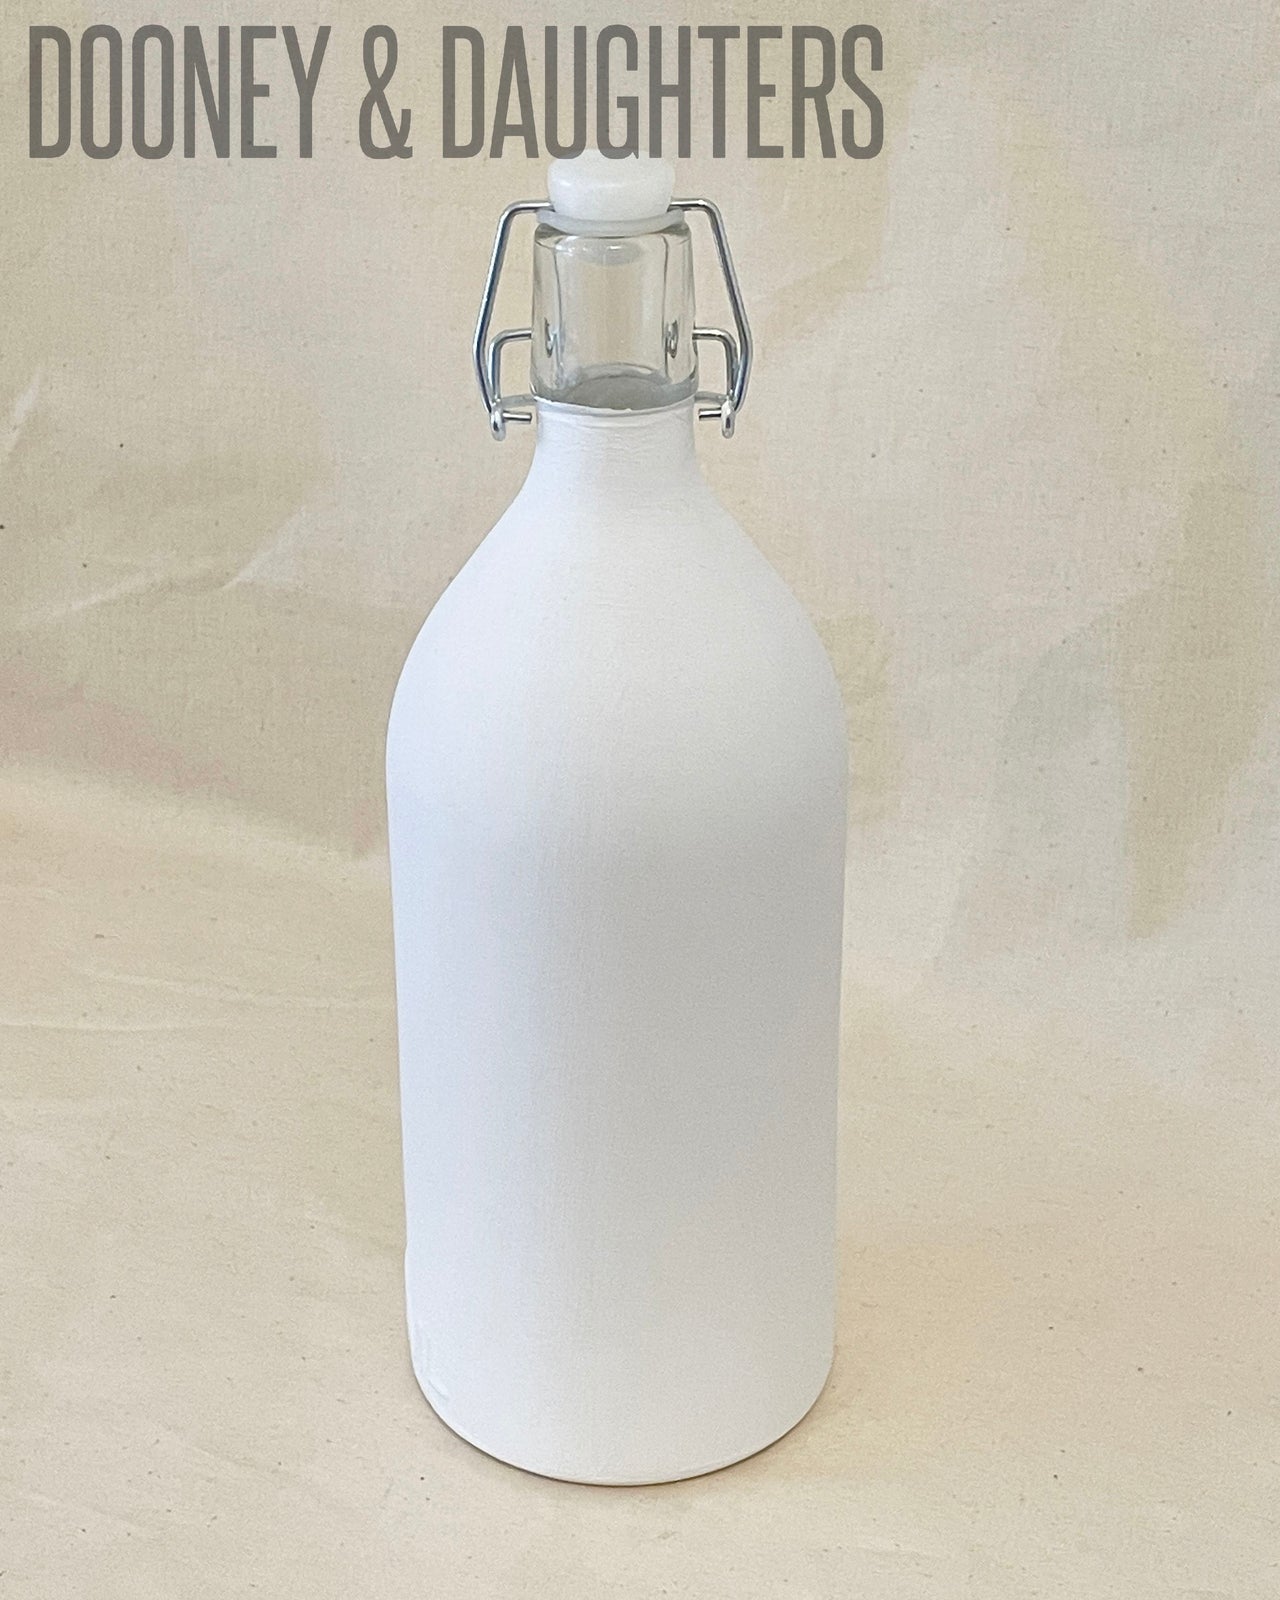 White Glass Bottle